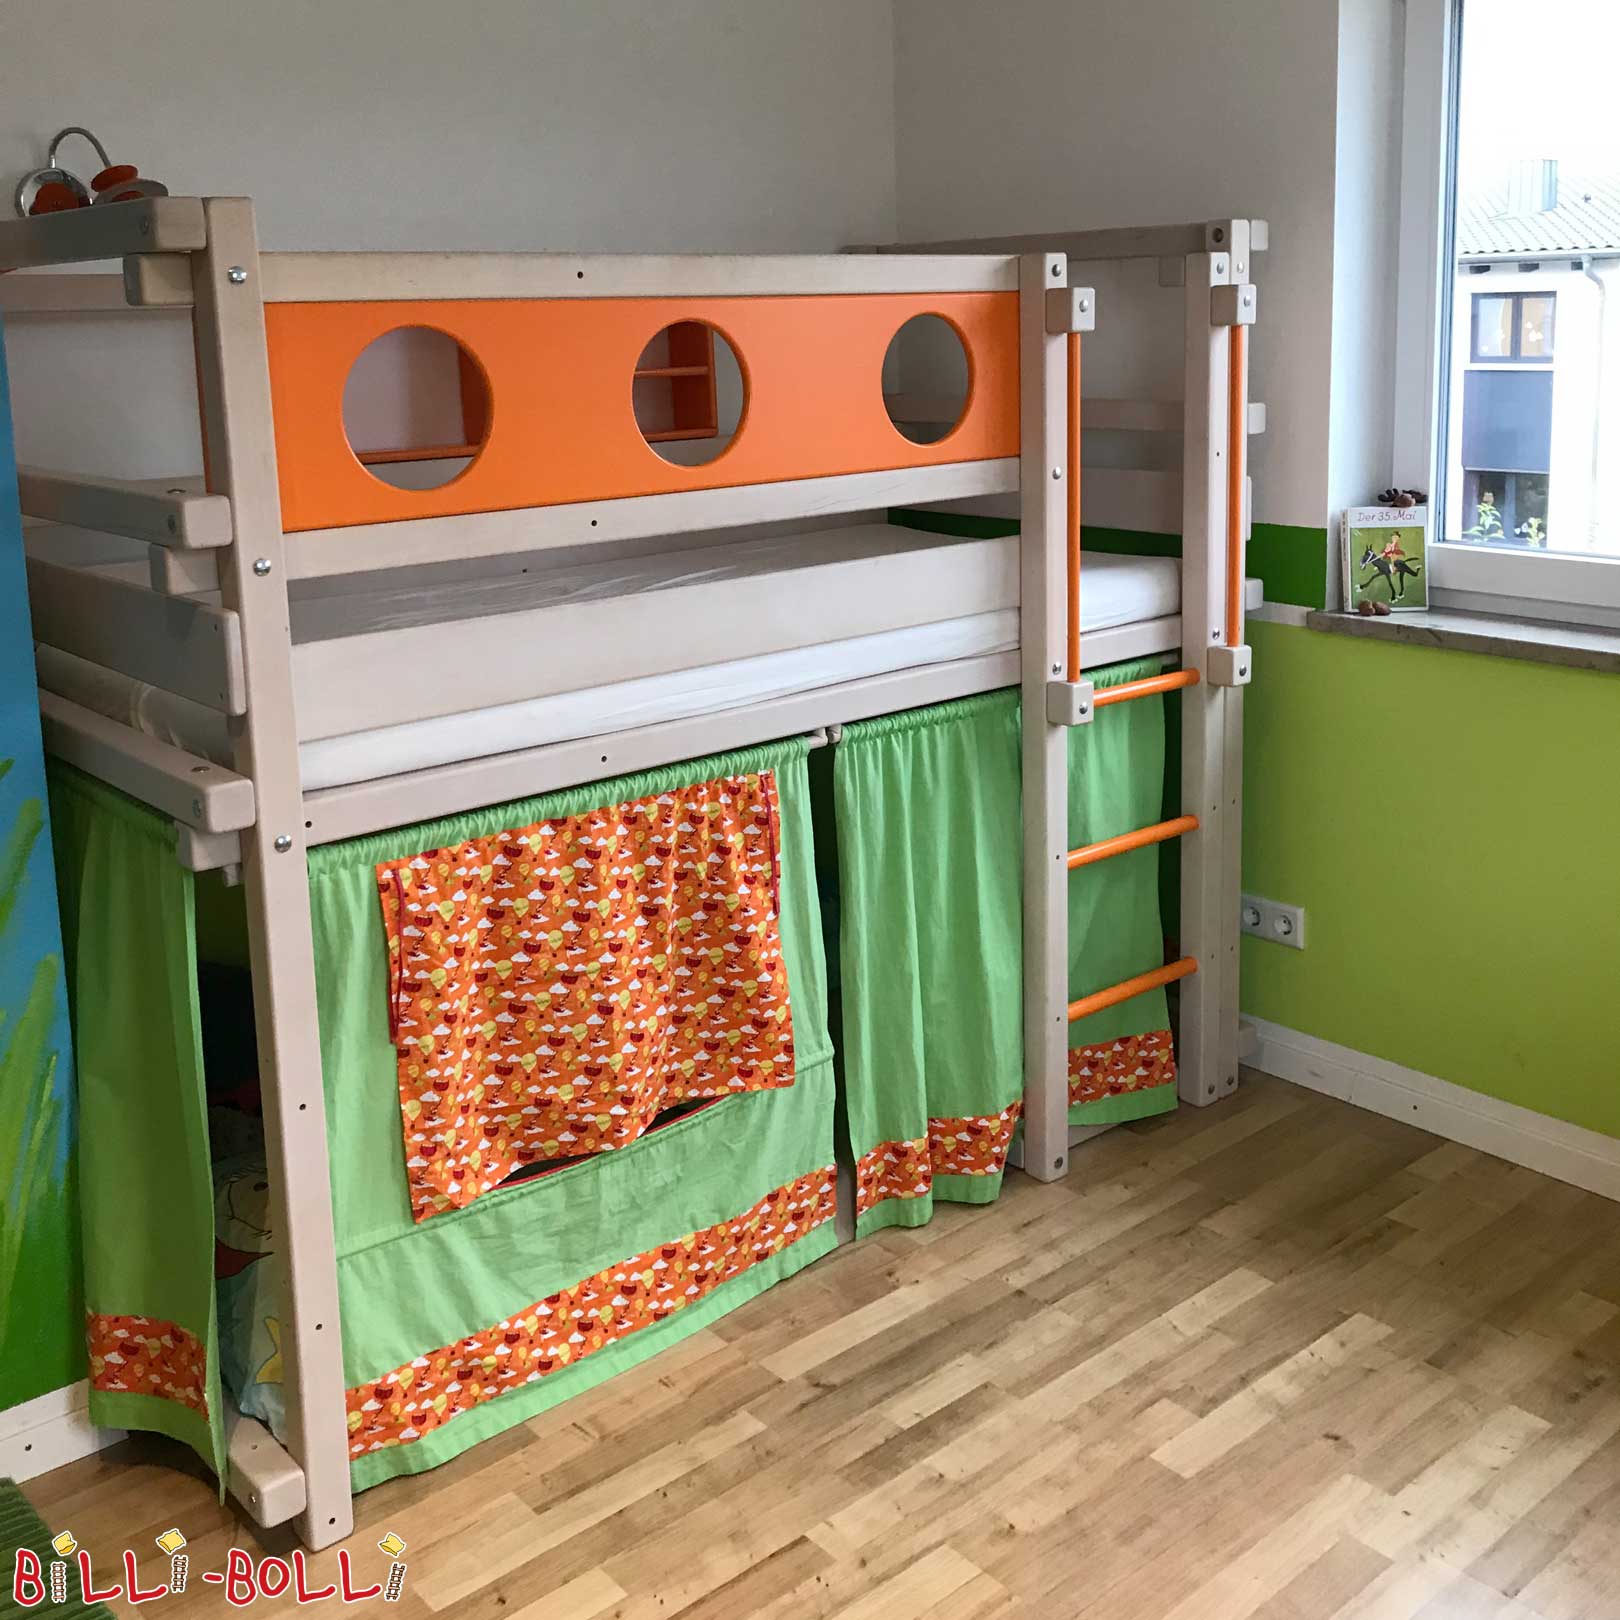 Színes félpadlású ágy, a félmagasságú tetőtéri ágy kisgyermekek számára (kisgyermekágy) 3 éves kortól (Félmagasságú tetőtéri ágy)